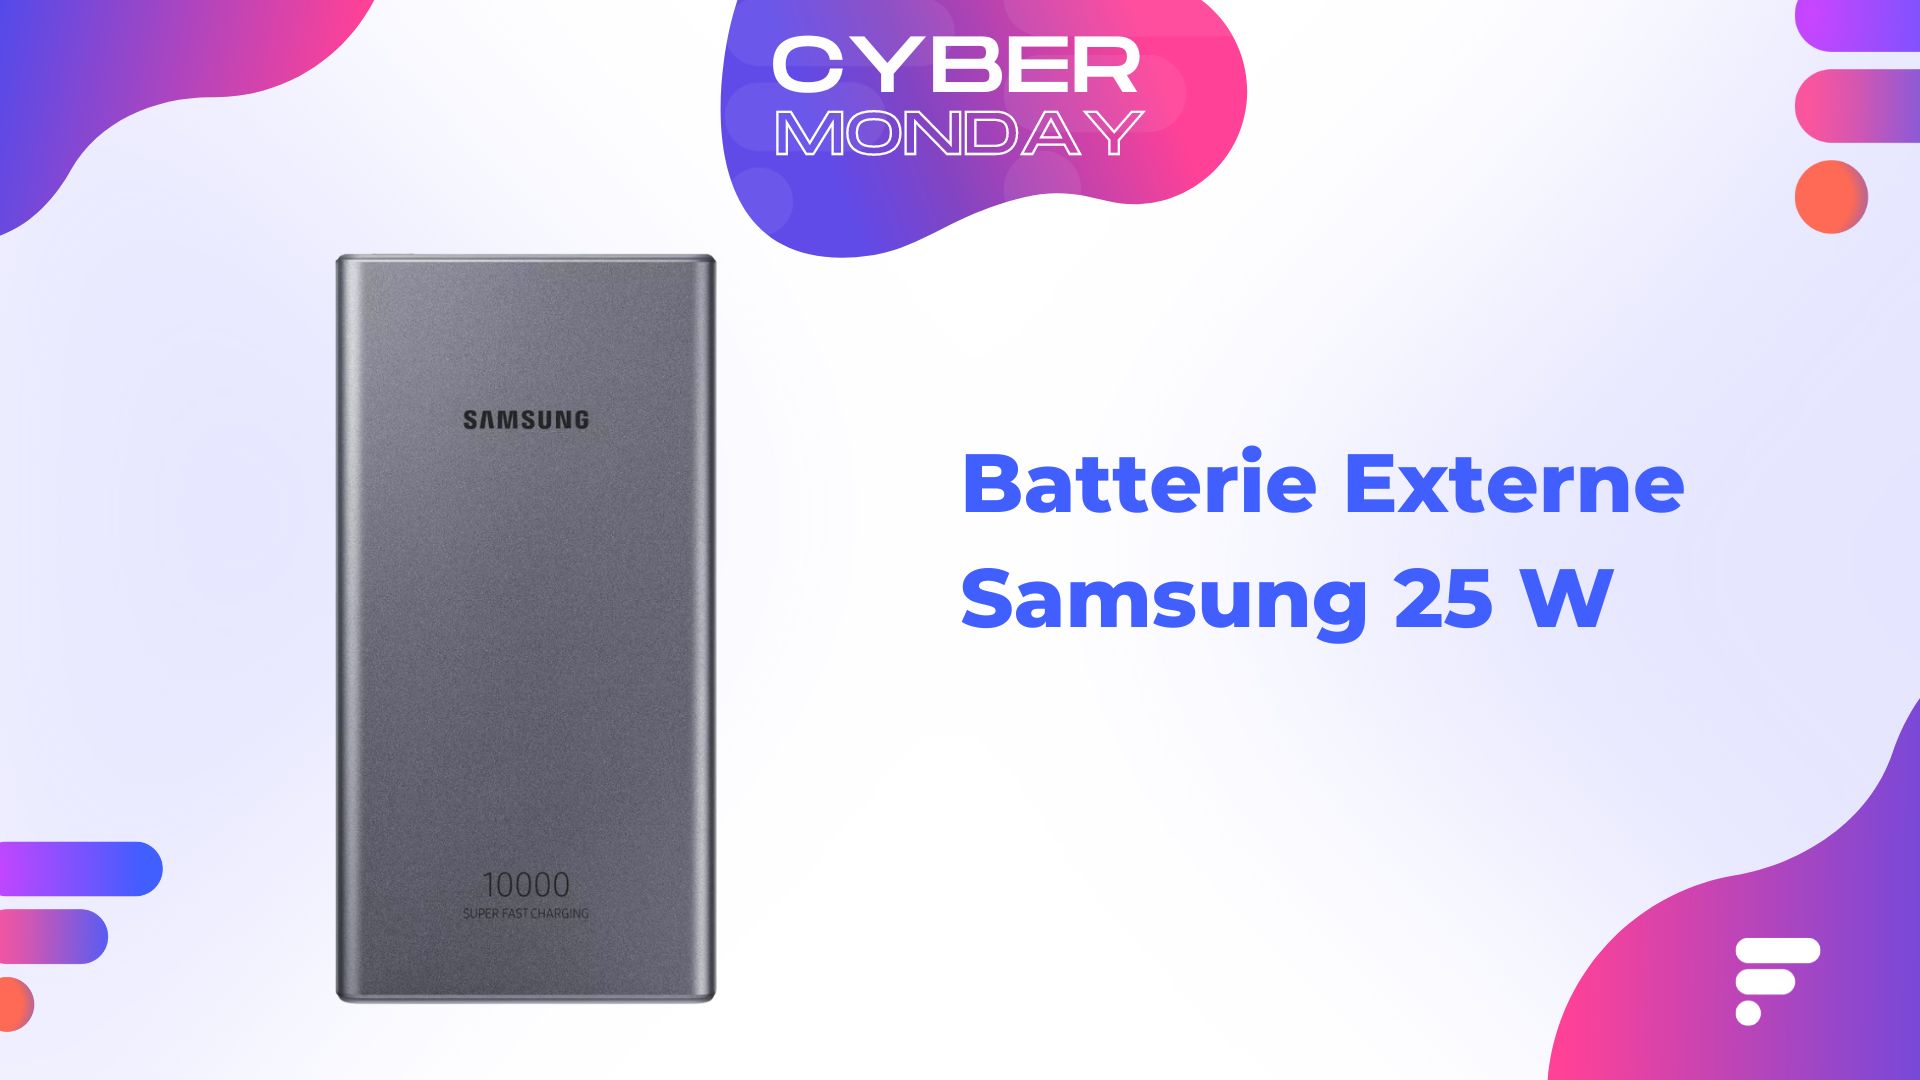 À peine 5 euros pour cette batterie externe Samsung lors du Cyber Monday